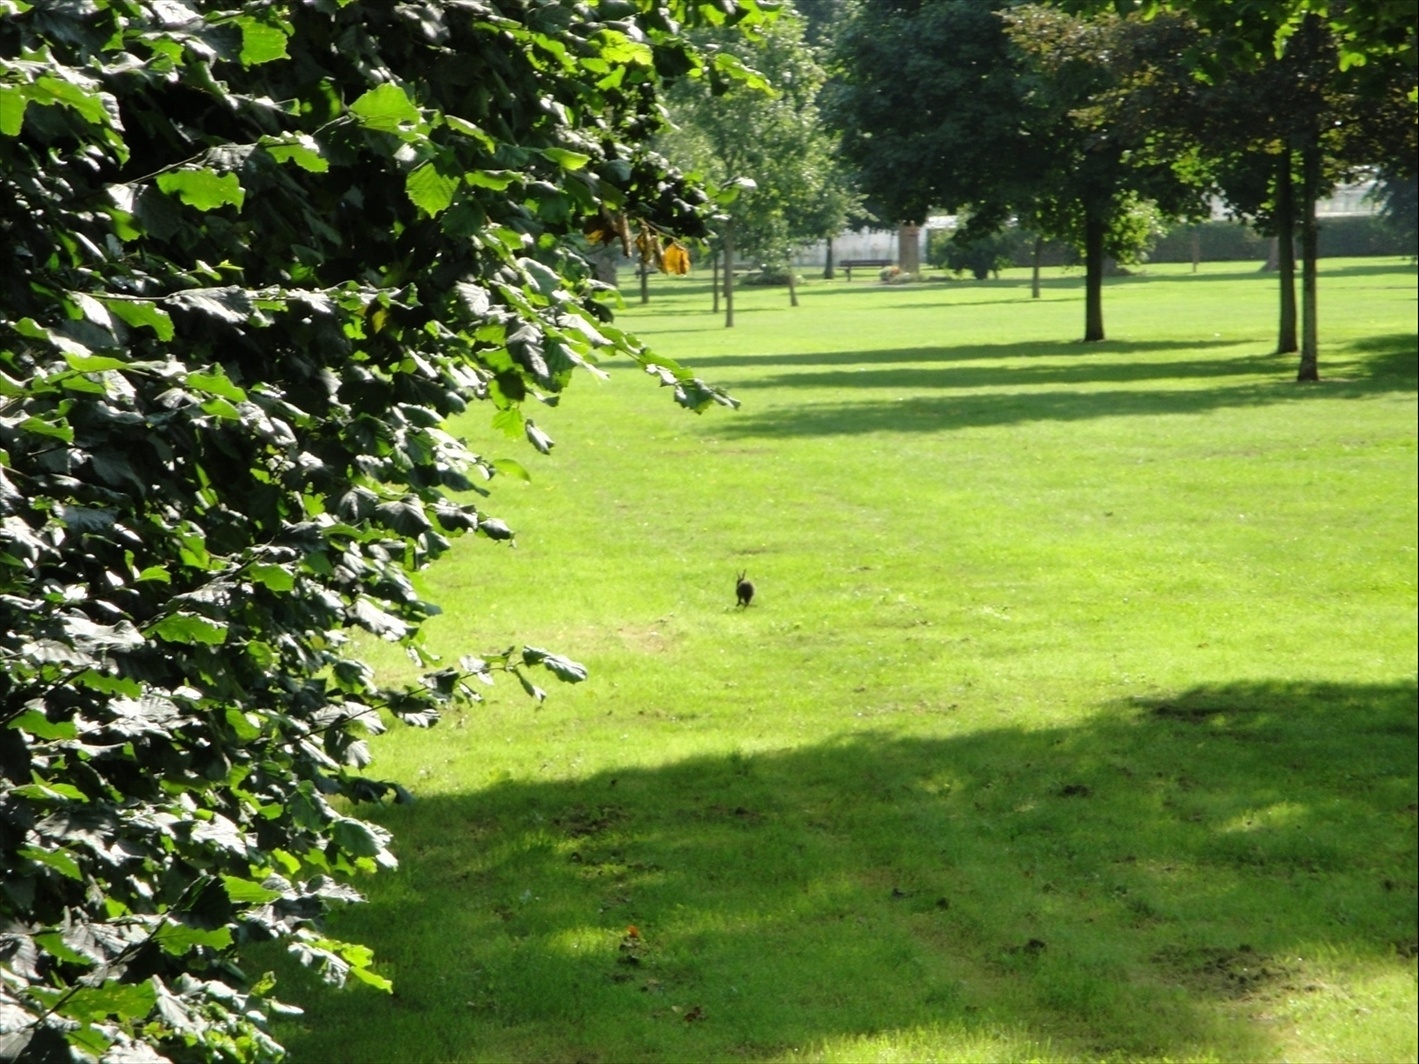 Foto: Un conejo correteando por en medio del parque - Brugge (Flanders), Bélgica